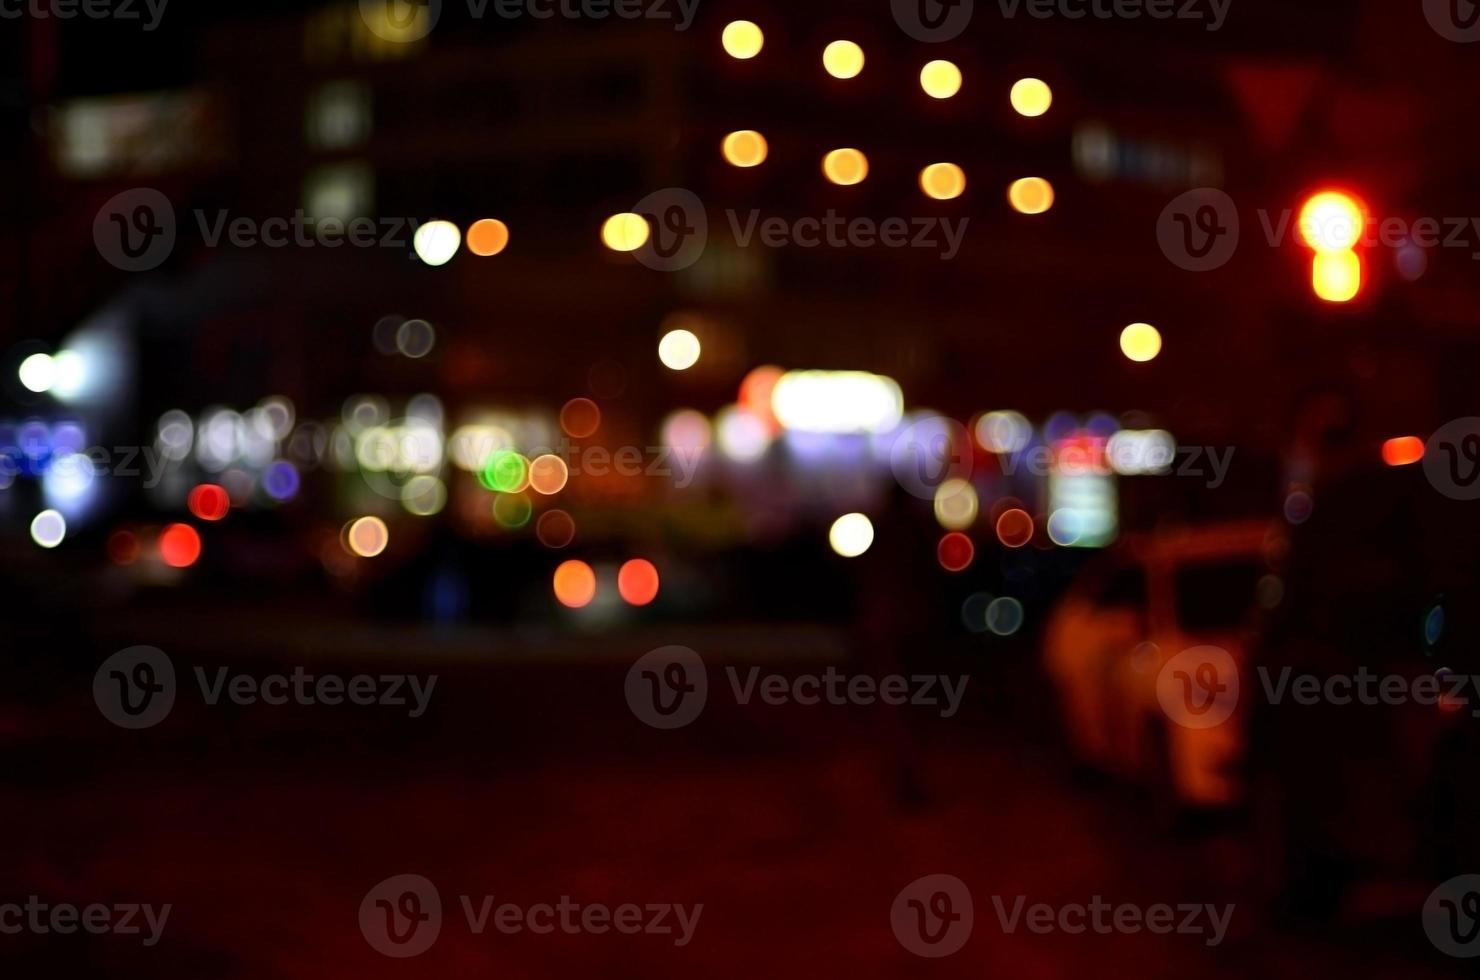 suddig landskap av natt stad foto